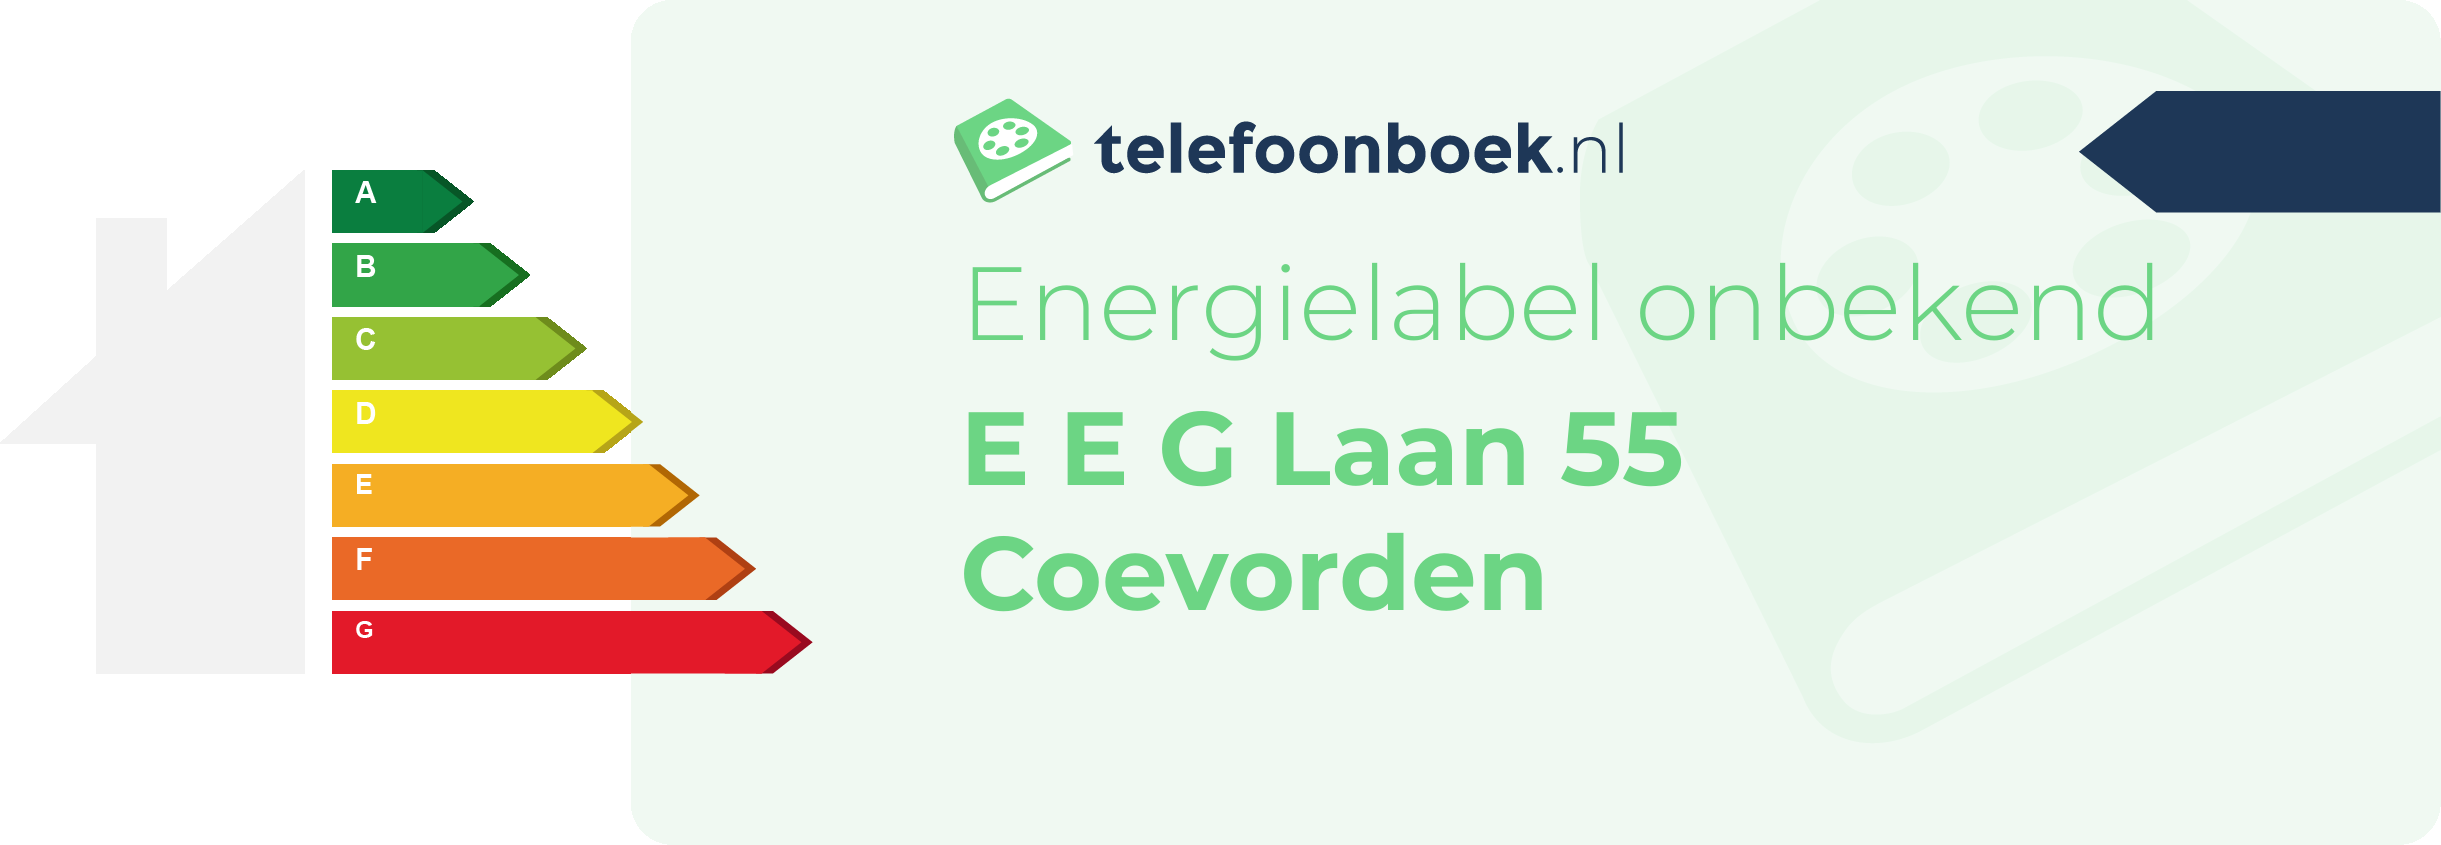 Energielabel E E G Laan 55 Coevorden